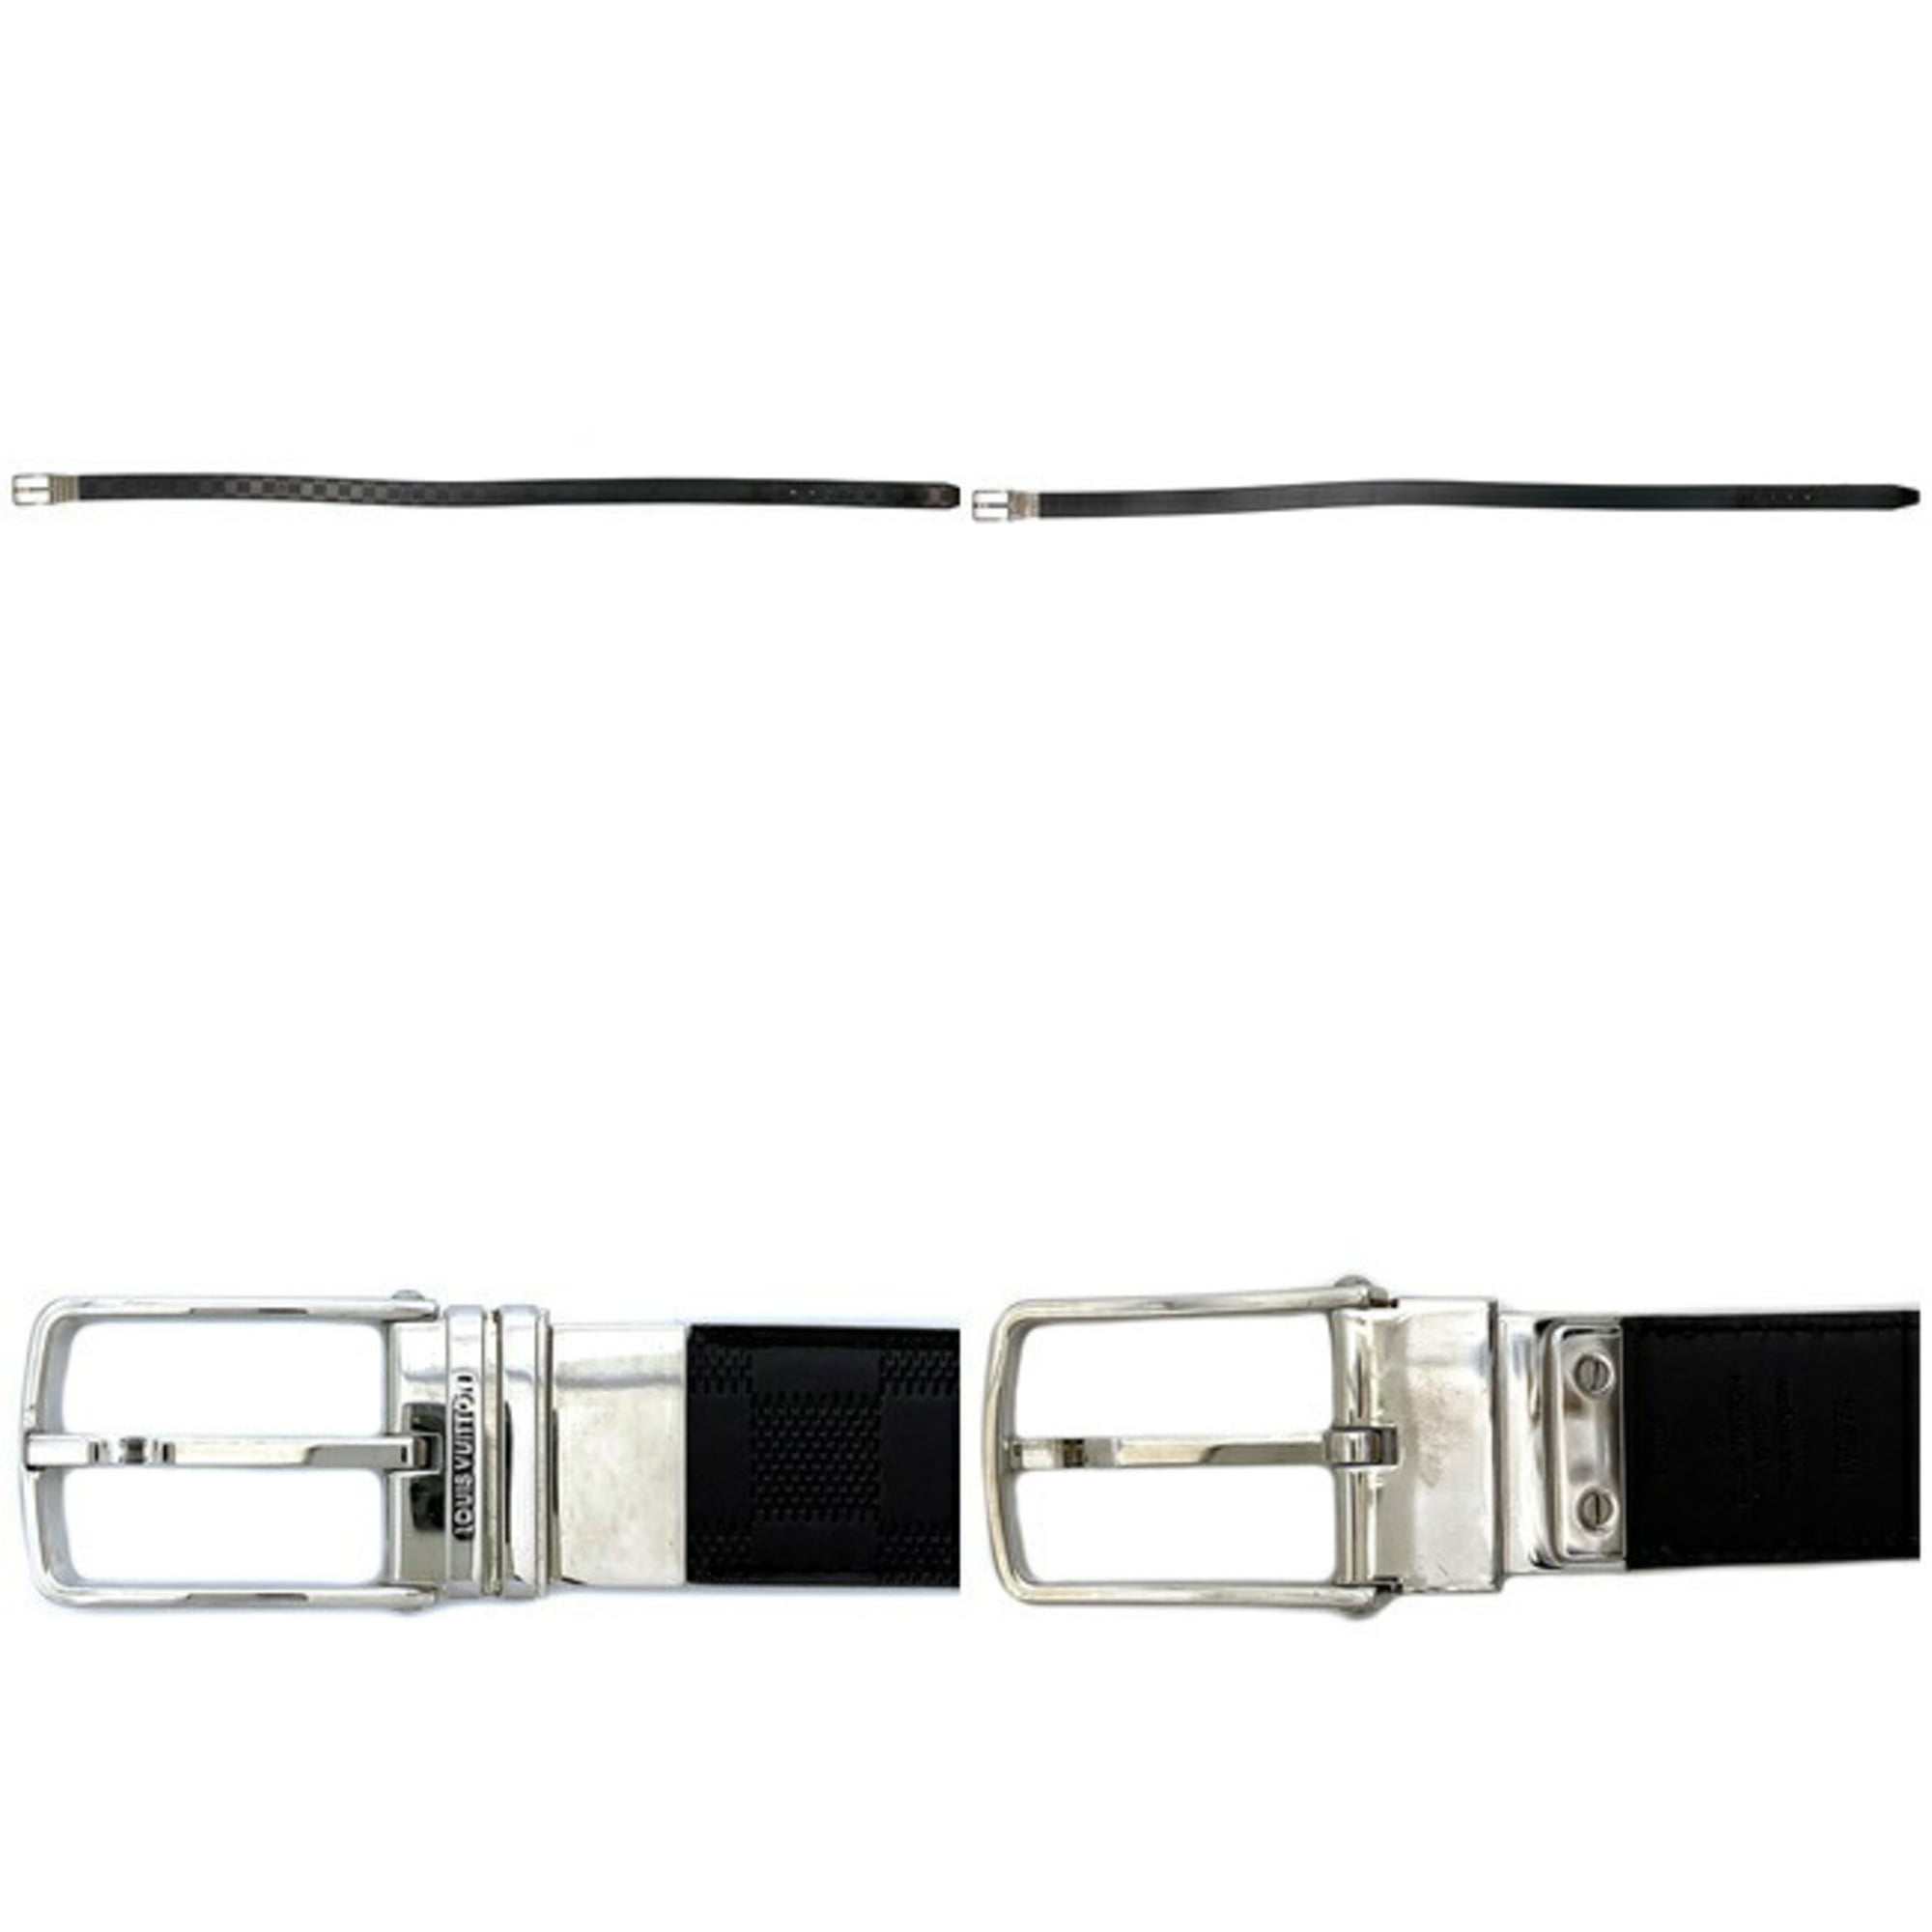 Louis Vuitton Black Damier Inifini Leather Boston Reversible Belt 105cm